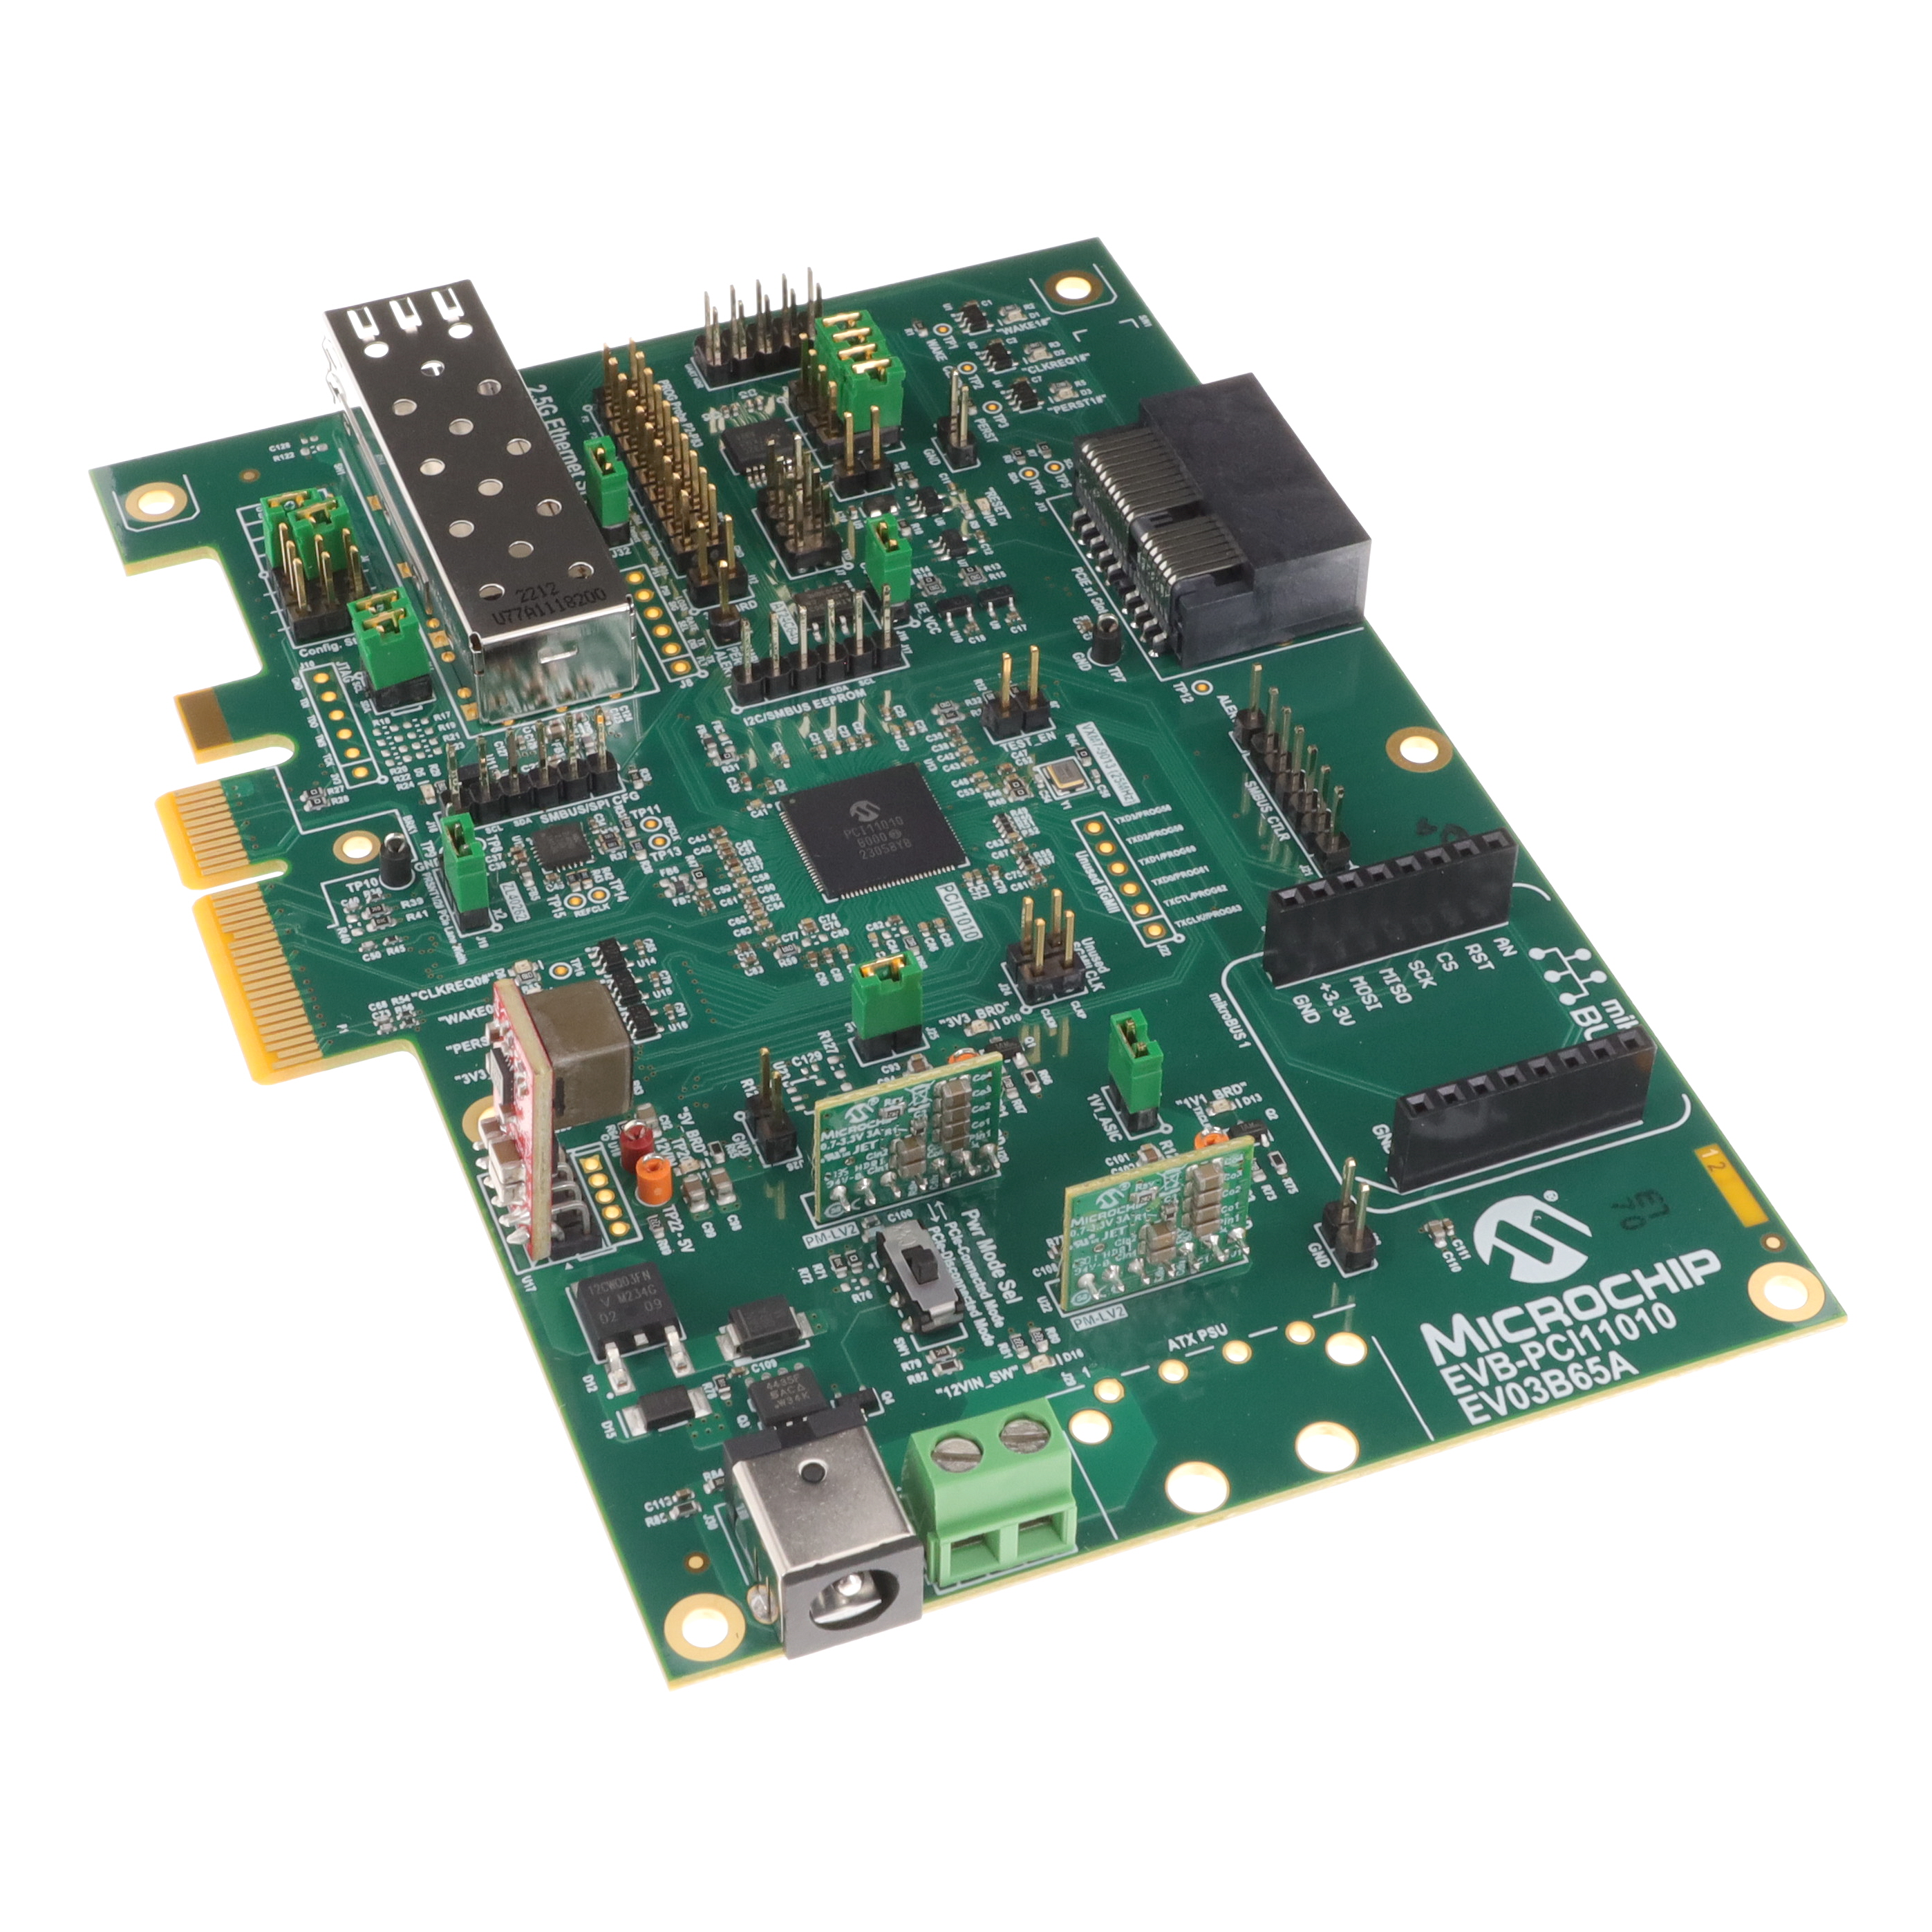 【EV03B65A】EVB-PCI11010